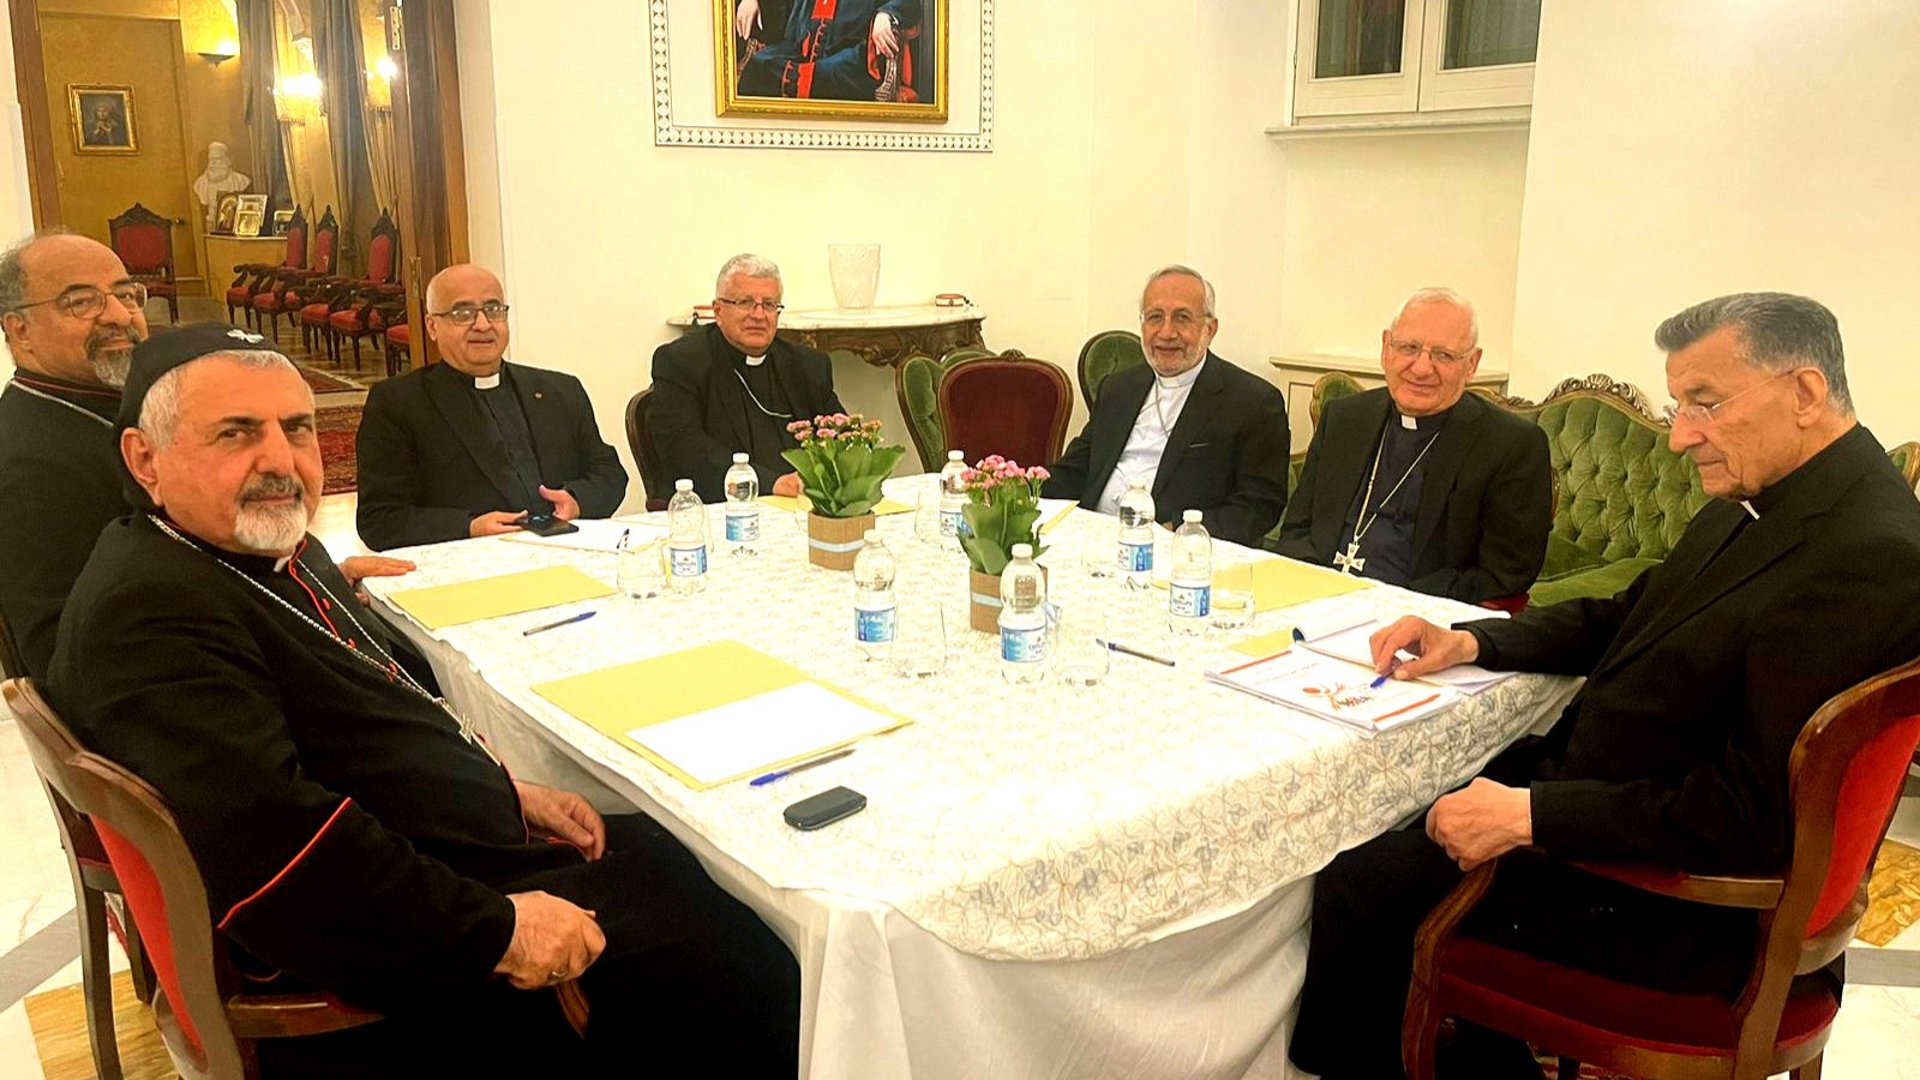 لويس ساكو بعد عشاء روما: كاثوليك الشرق يدعون إلى التهدئة والسلام في غزة